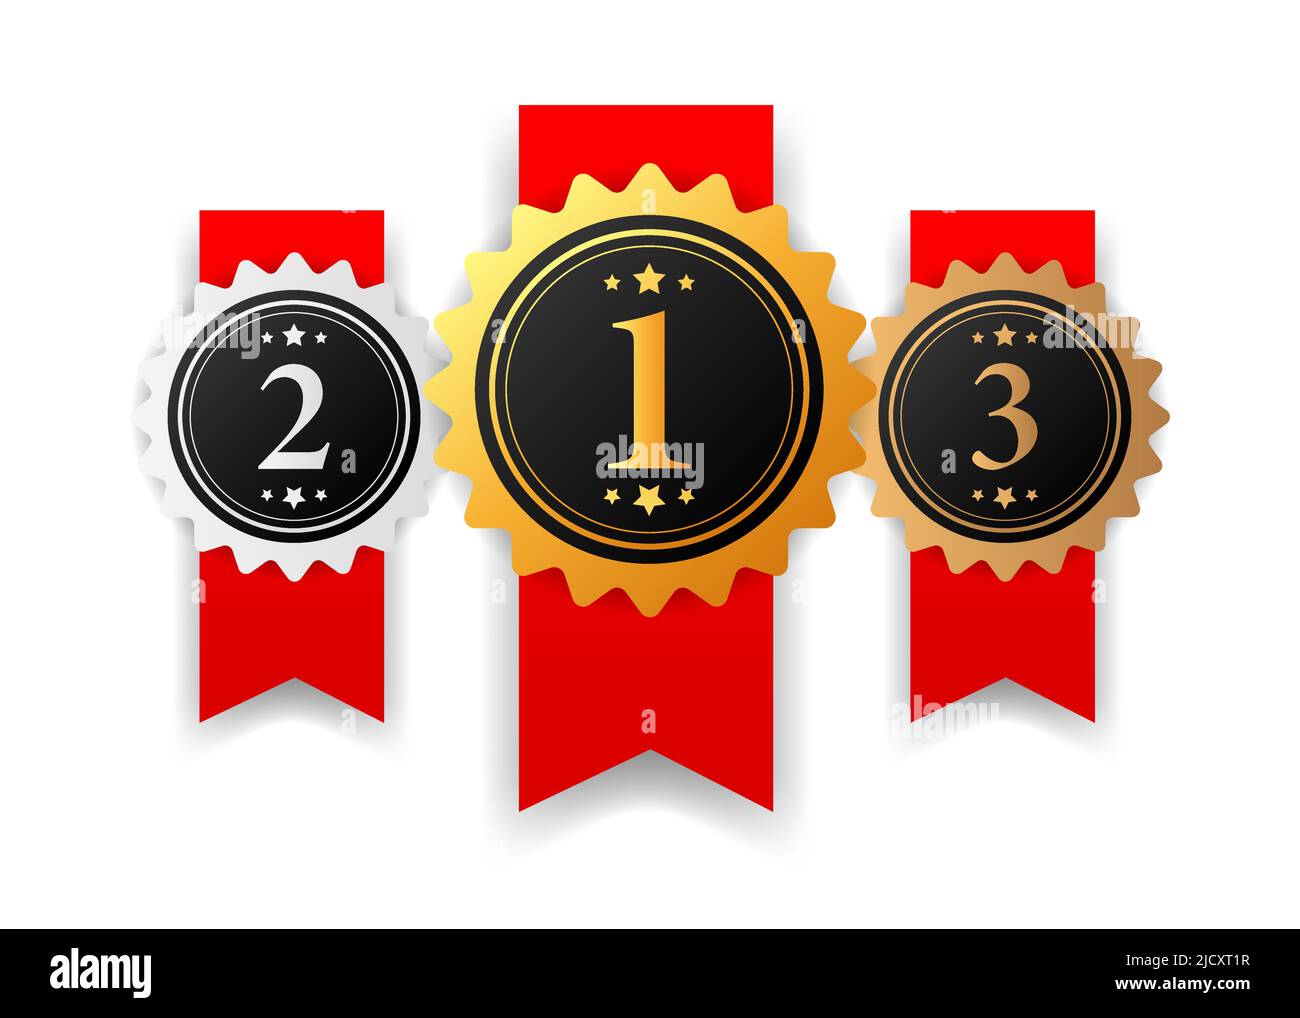 Gold, Silber und Bronze Medaille - 1., 2. und 3. Platzieren Auszeichnungen gesetzt. Stock Vektor